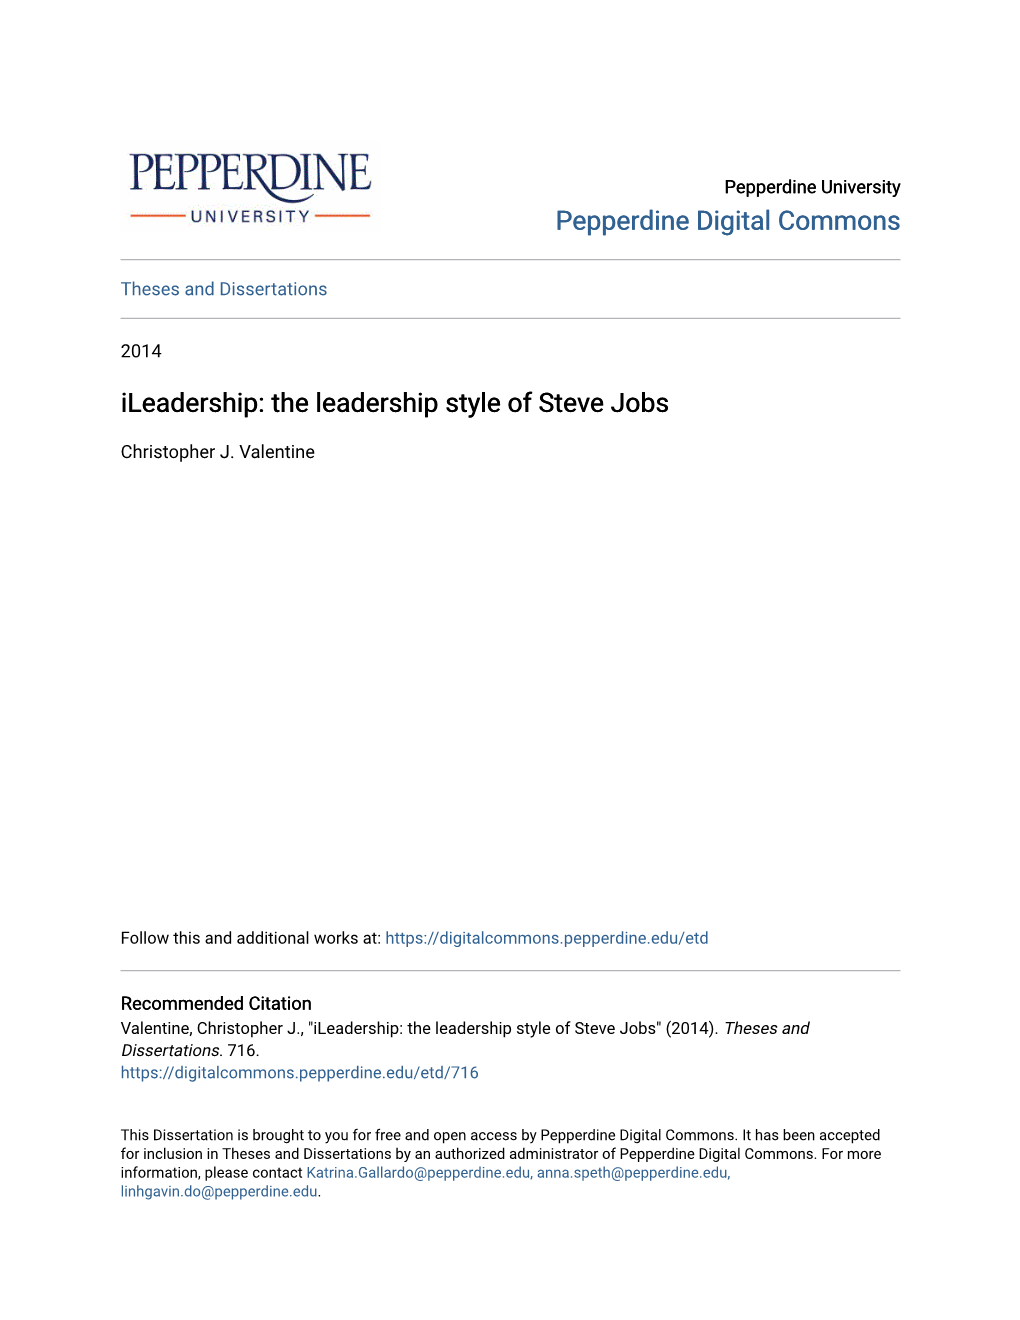 Ileadership: the Leadership Style of Steve Jobs